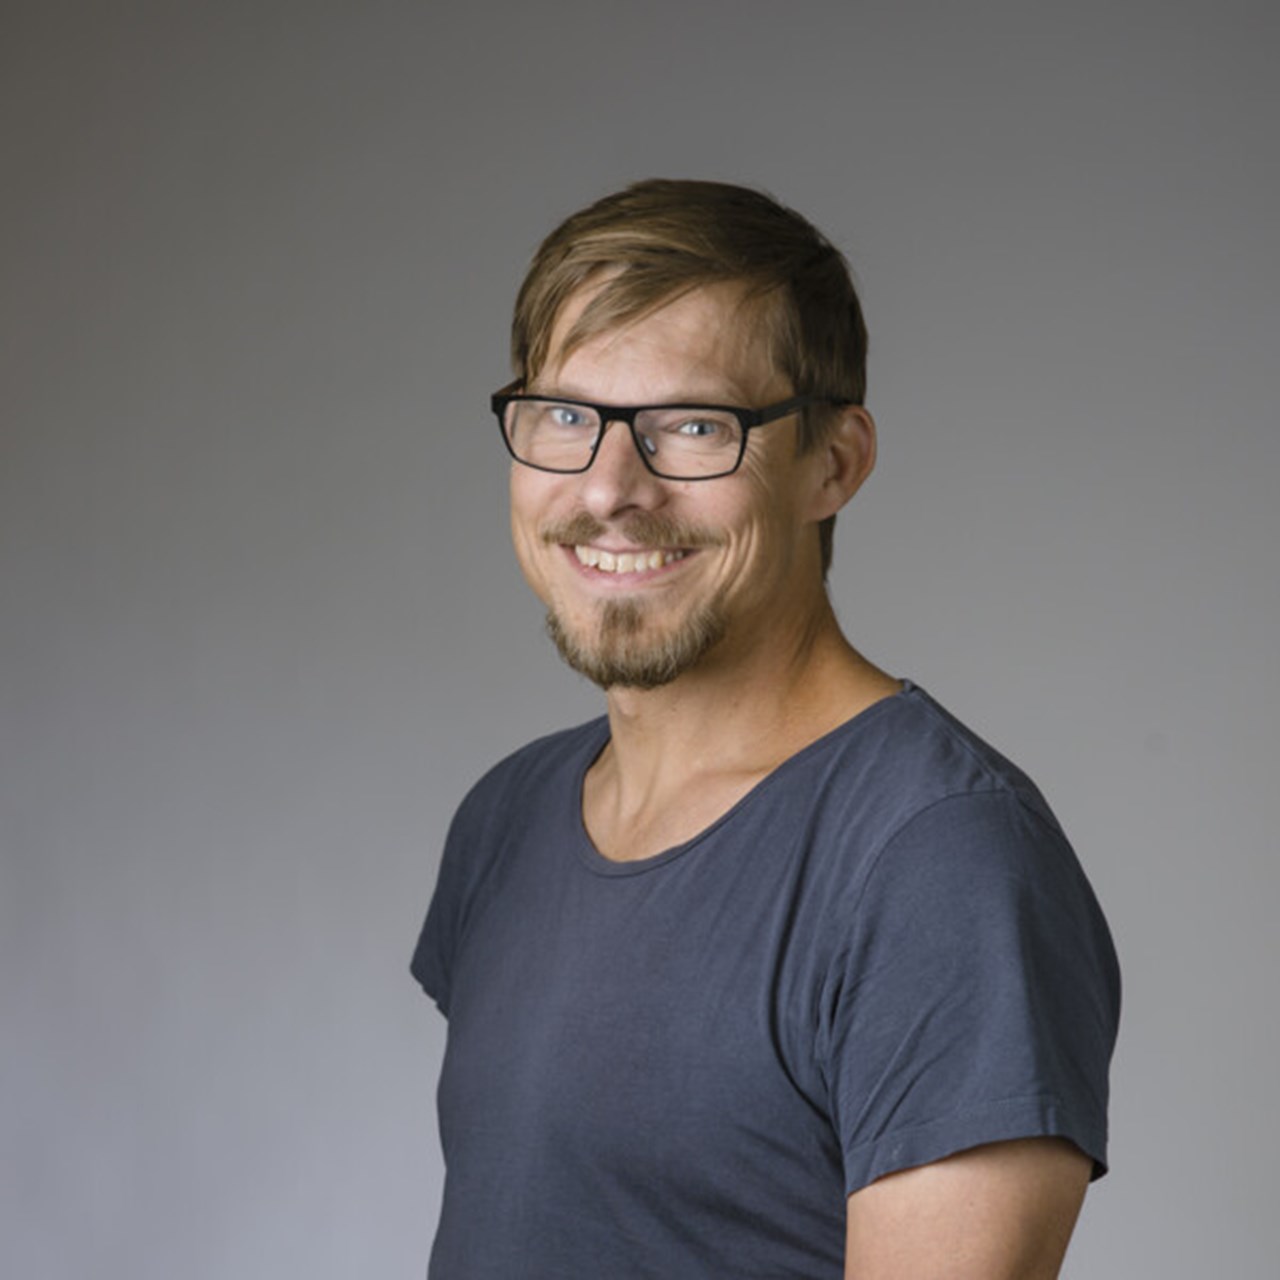 Porträtt på Mattias Alenius, professor i cell- och molekylärbiologi, Institutionen för molekylärbiologi, Umeå universitet.